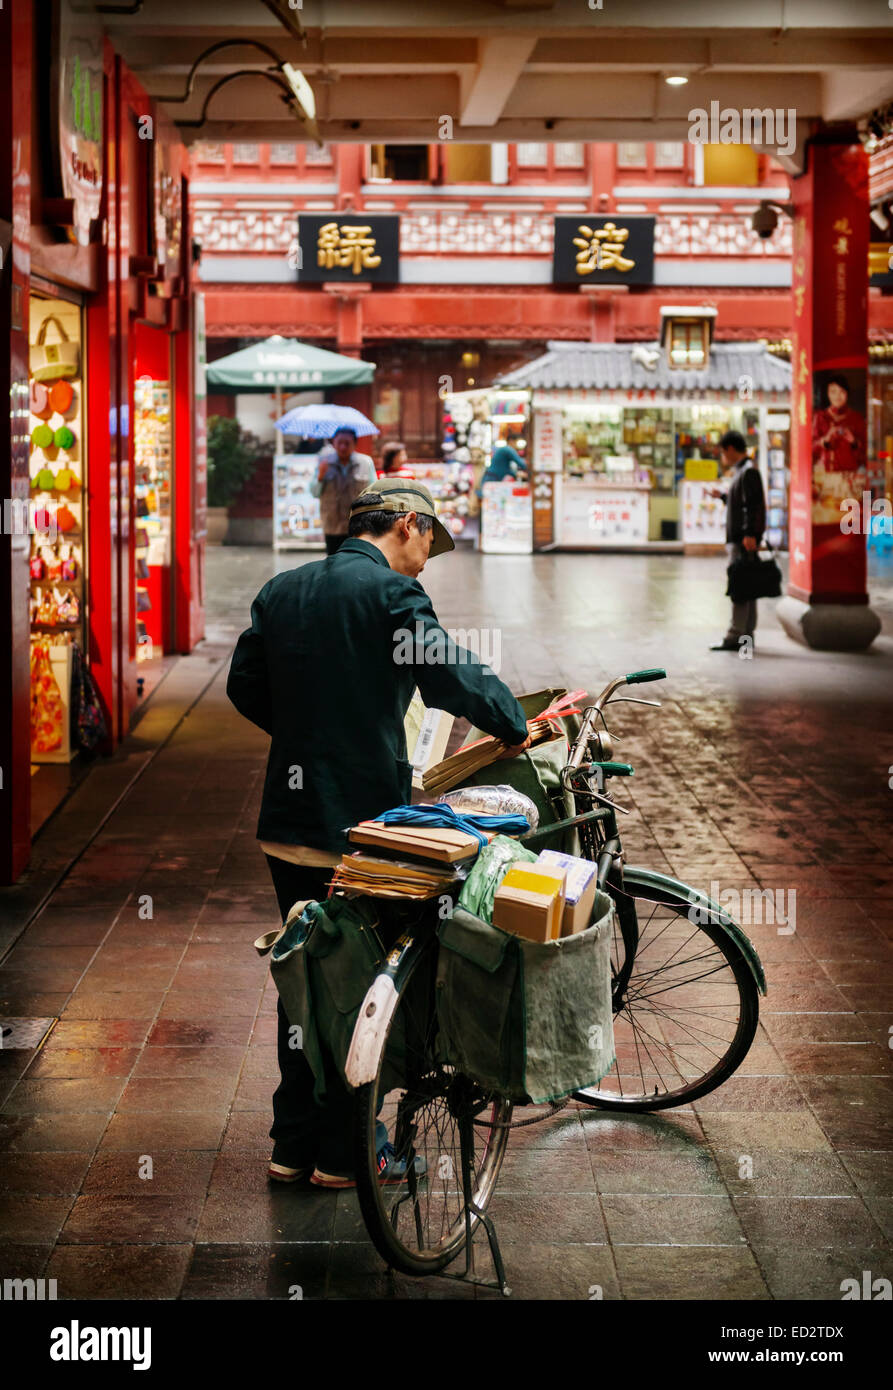 Führerschein verfügbar unter MaximImages.com - Postman liefert Post per Fahrrad in der Altstadt von Shanghai, China 2014 Stockfoto